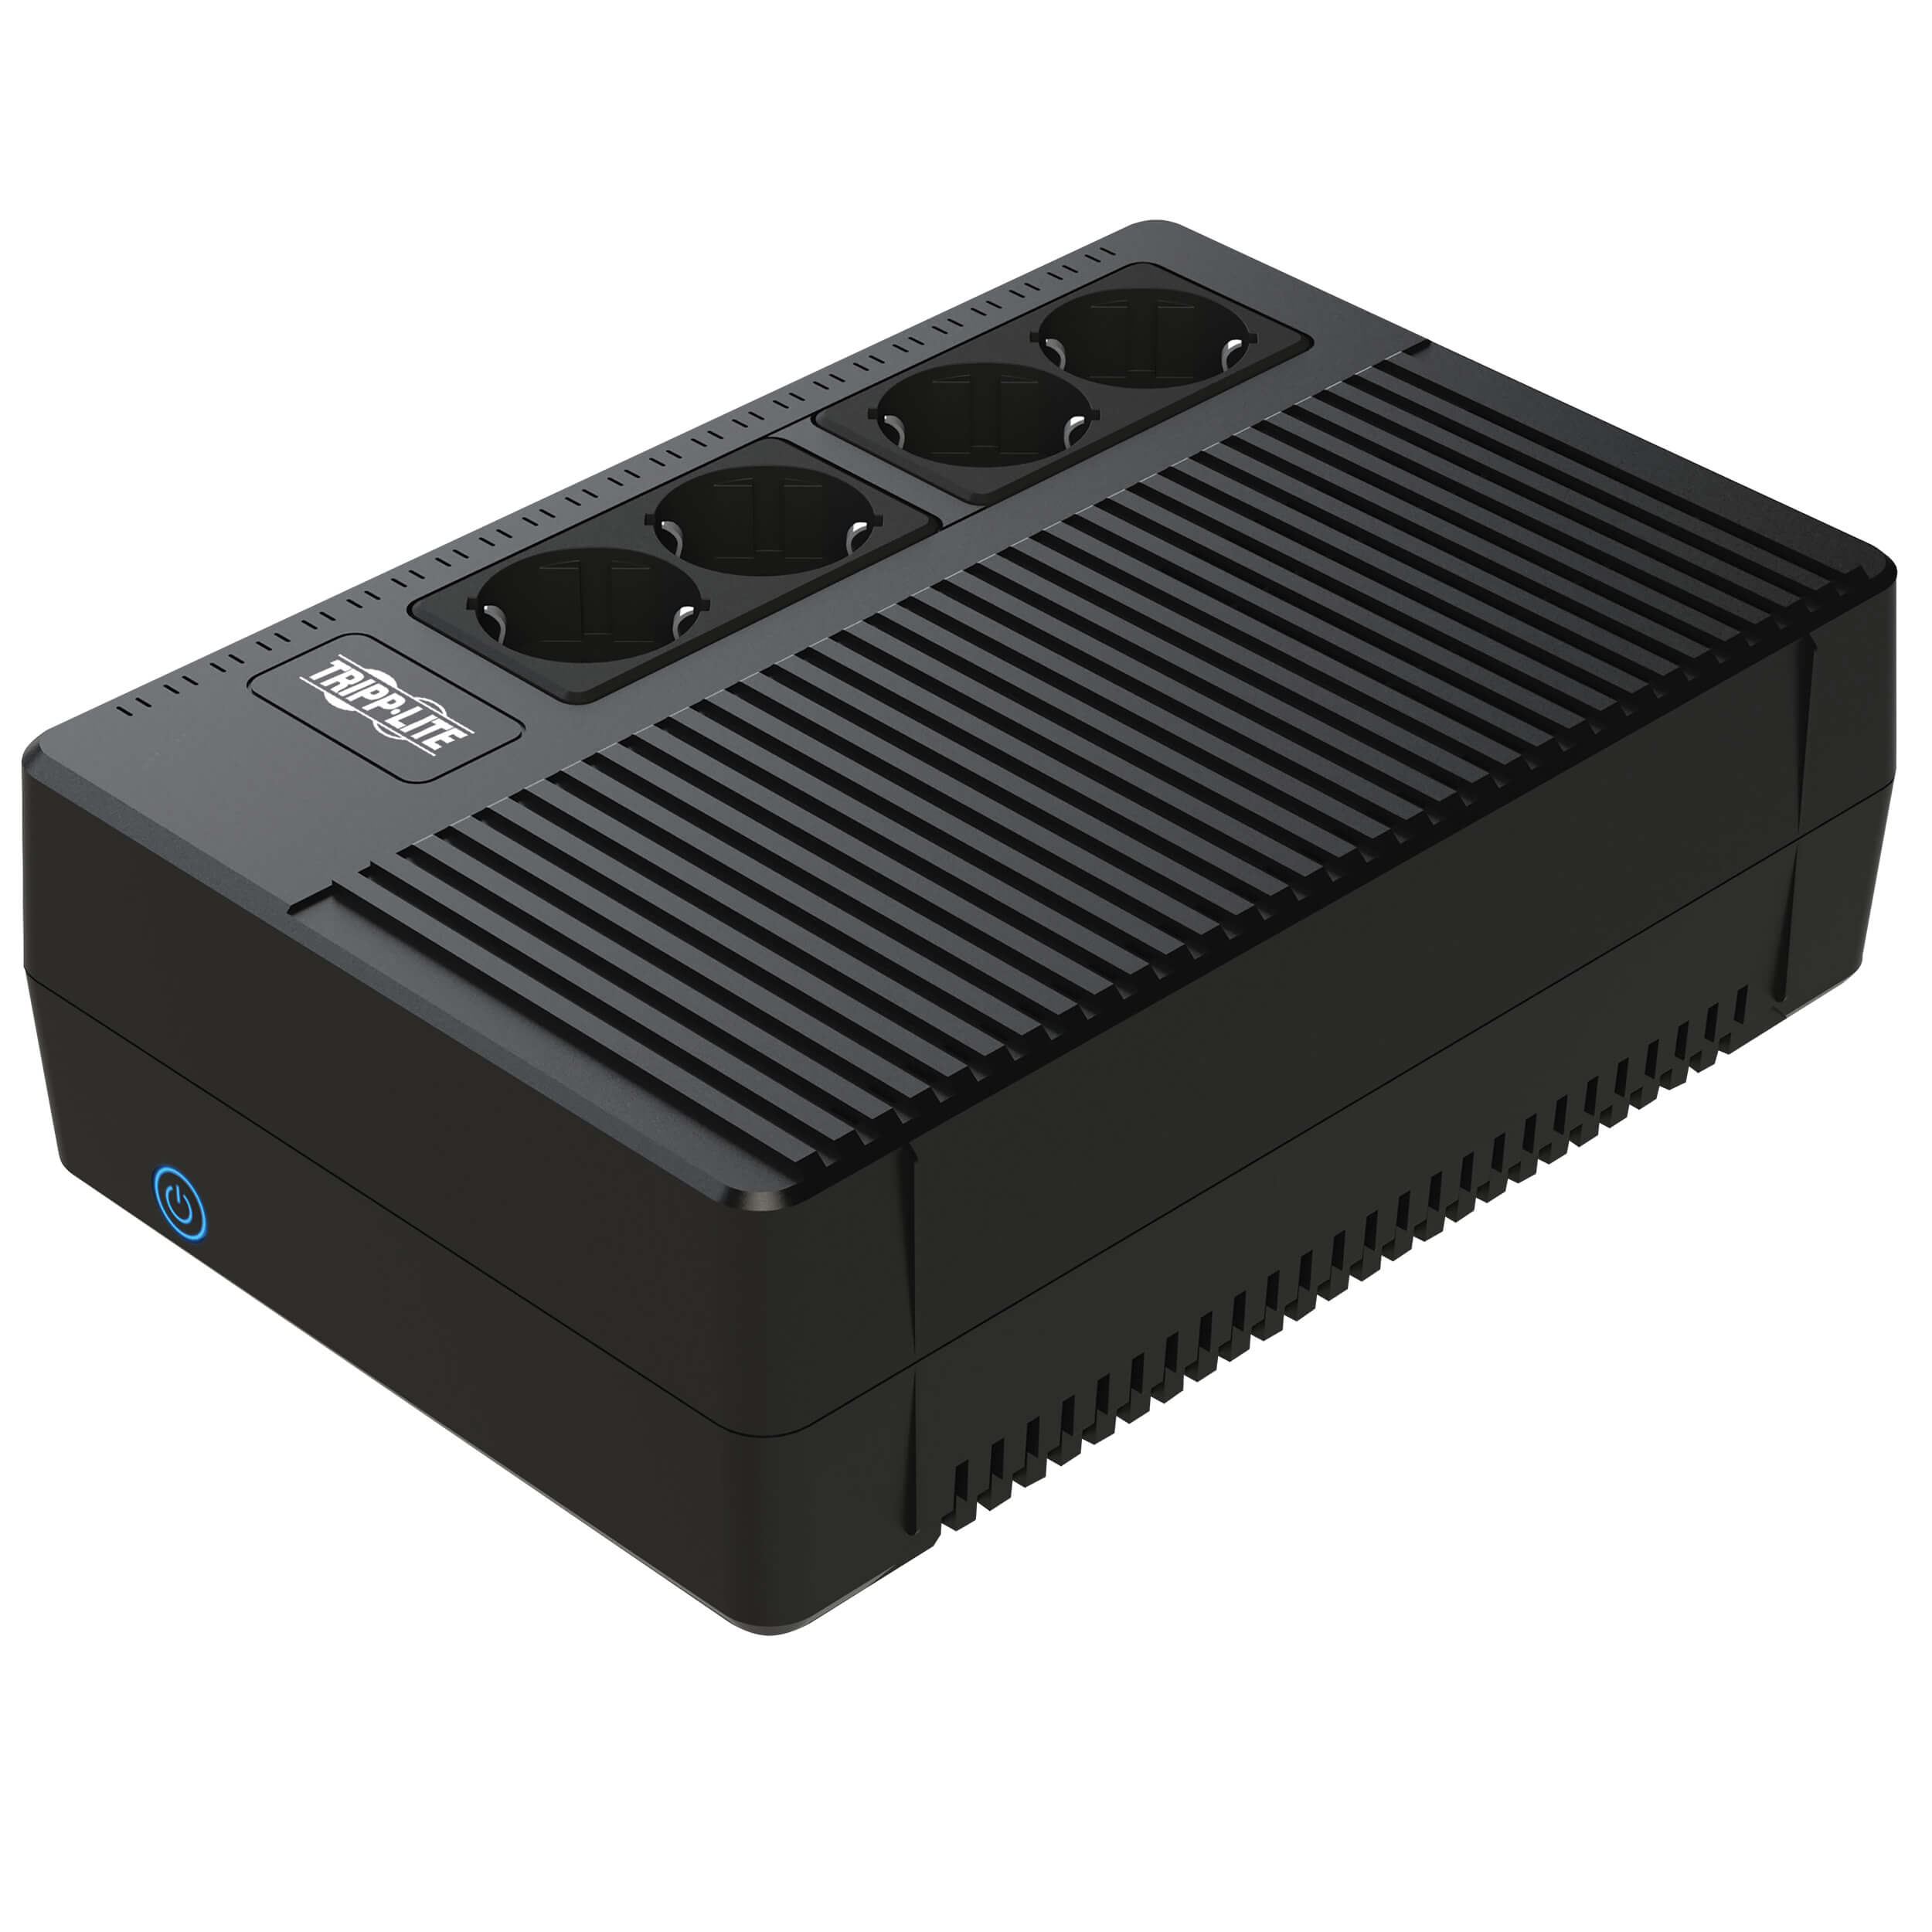 ИБП Tripp Lite Ultra-Compact AVRX1000UD, 1000 В·А, 600 Вт, EURO, розеток - 4, черный (AVRX1000UD)